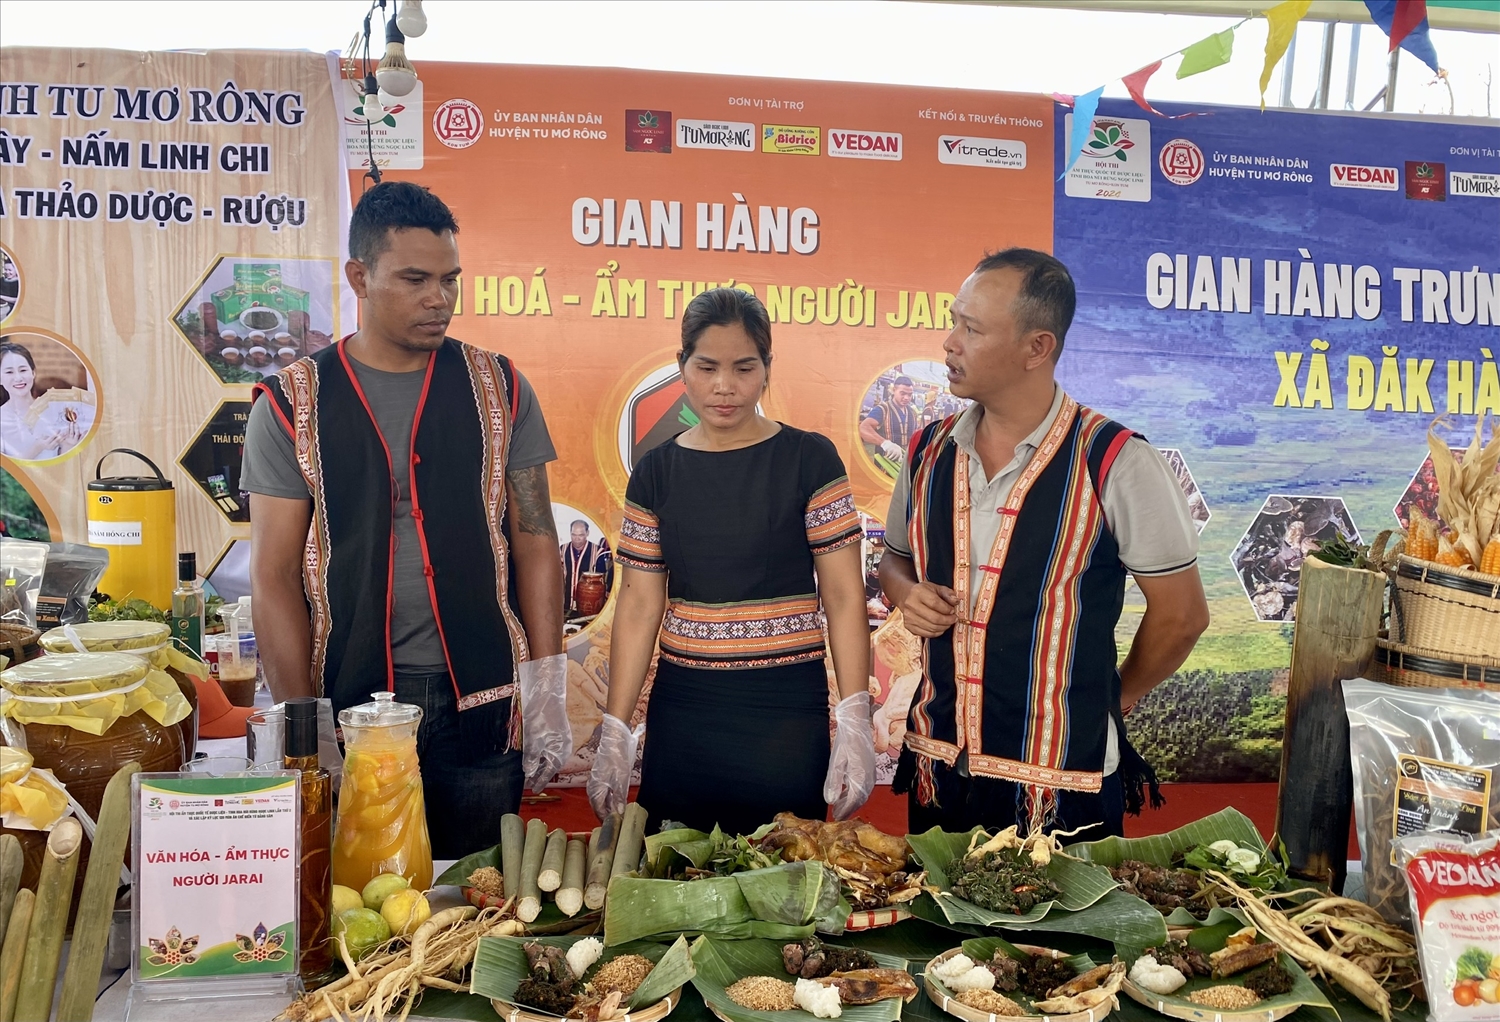 Đội thi đến từ tỉnh Gia Lai giới thiệu các món ăn đặc trưng của đồng bào Gia Rai kết hợp với sâm dây